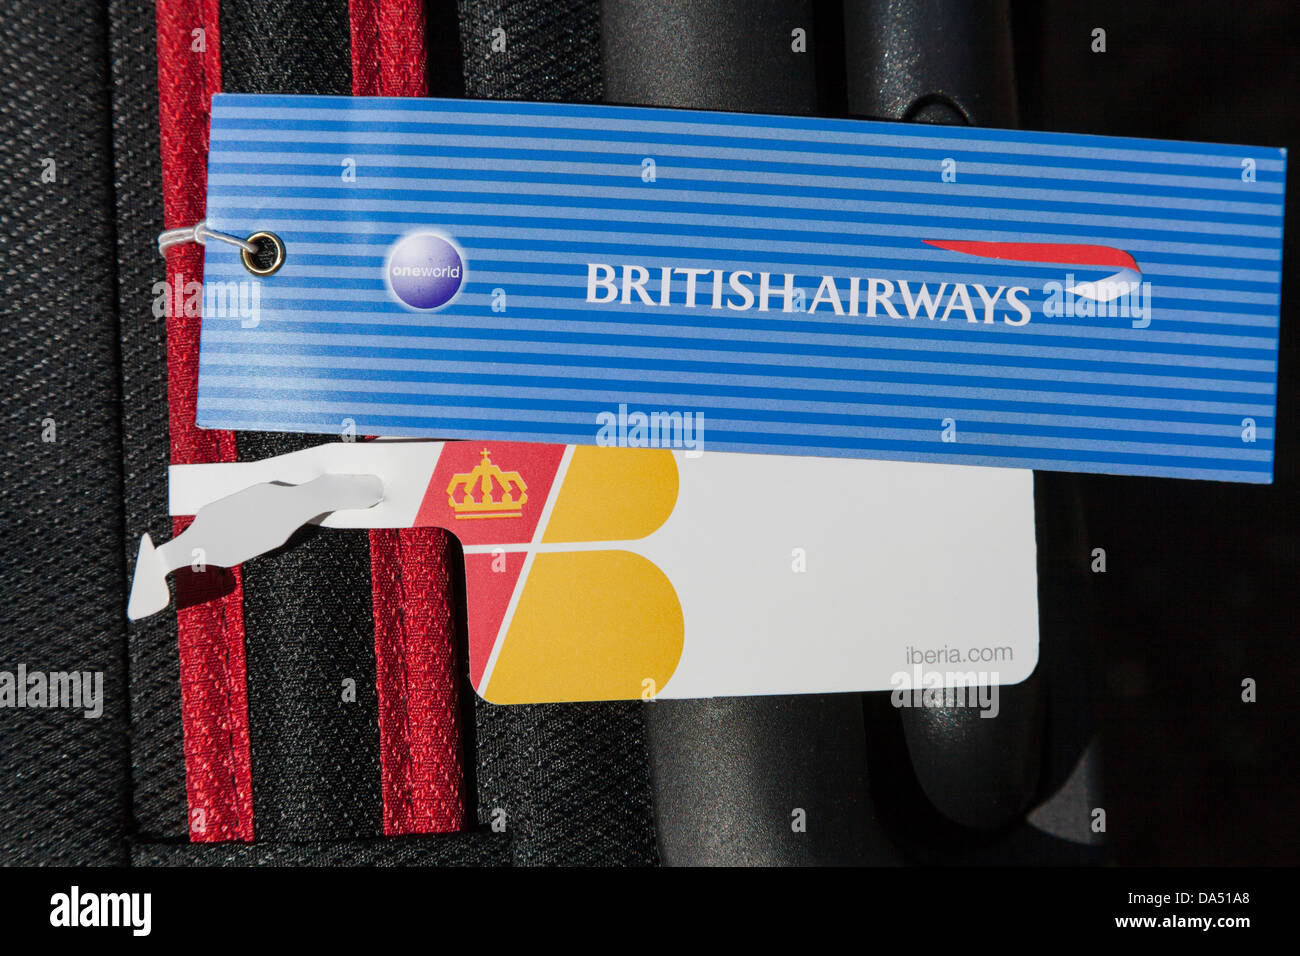 BA - Iberia luggage tags Stock Photo